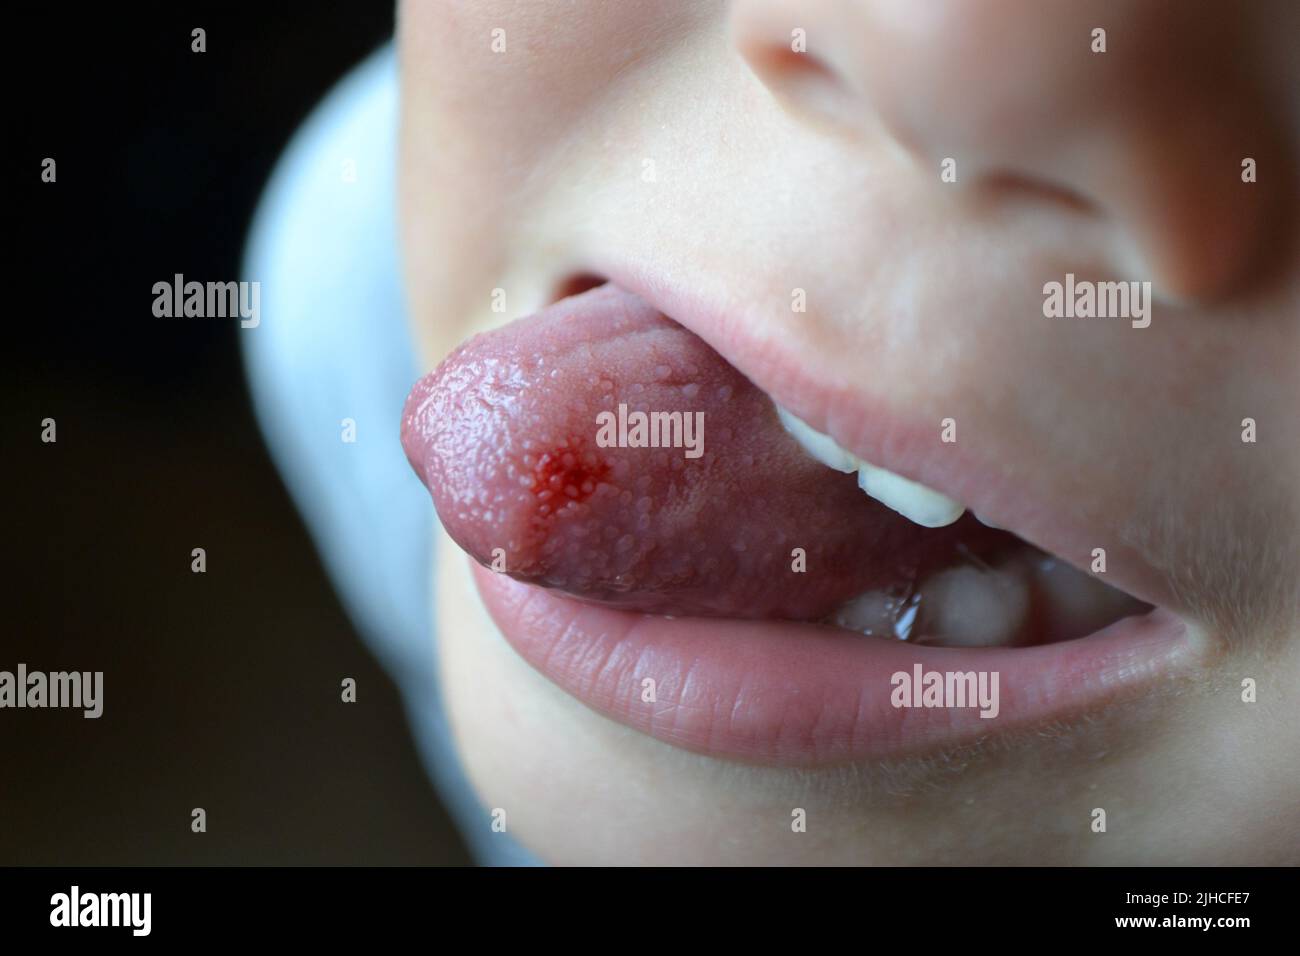 Lingua morso del bambino. Primo piano di labbra, lingua, protrusione di sangue Foto Stock